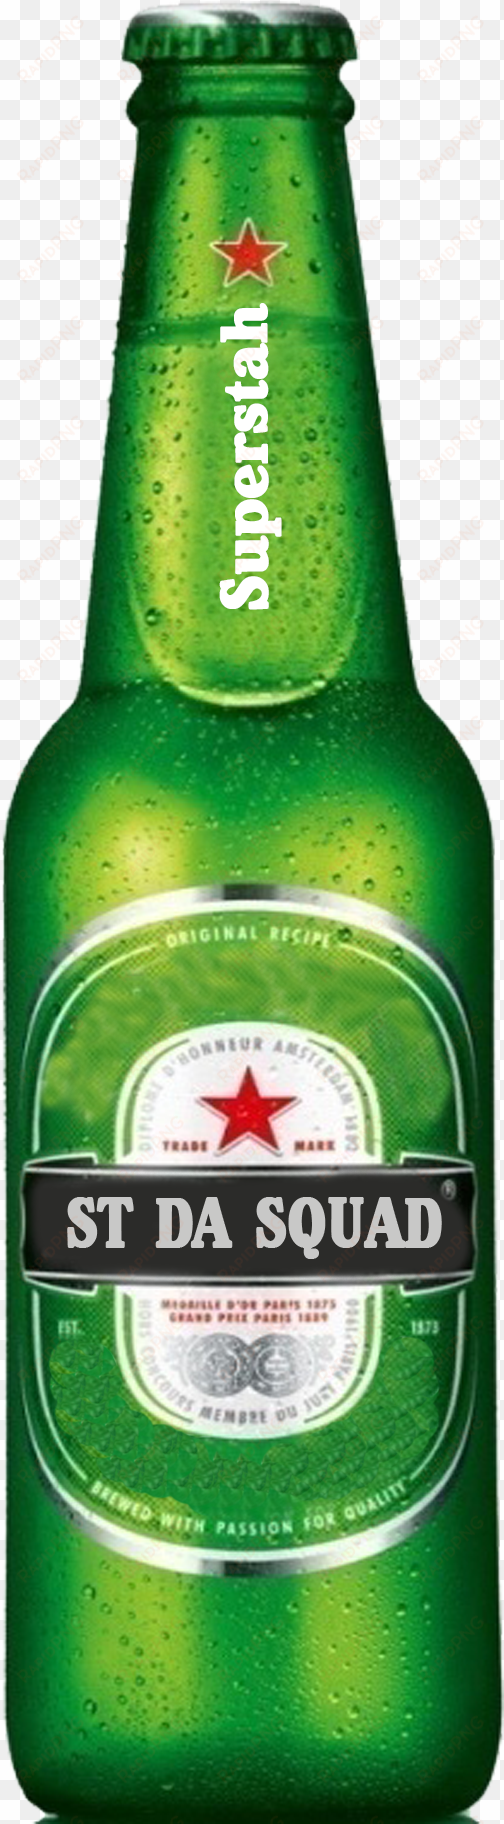 Image Result For Beer Bottle Png People Png, Heineken, - Heineken Long Neck 250ml transparent png image